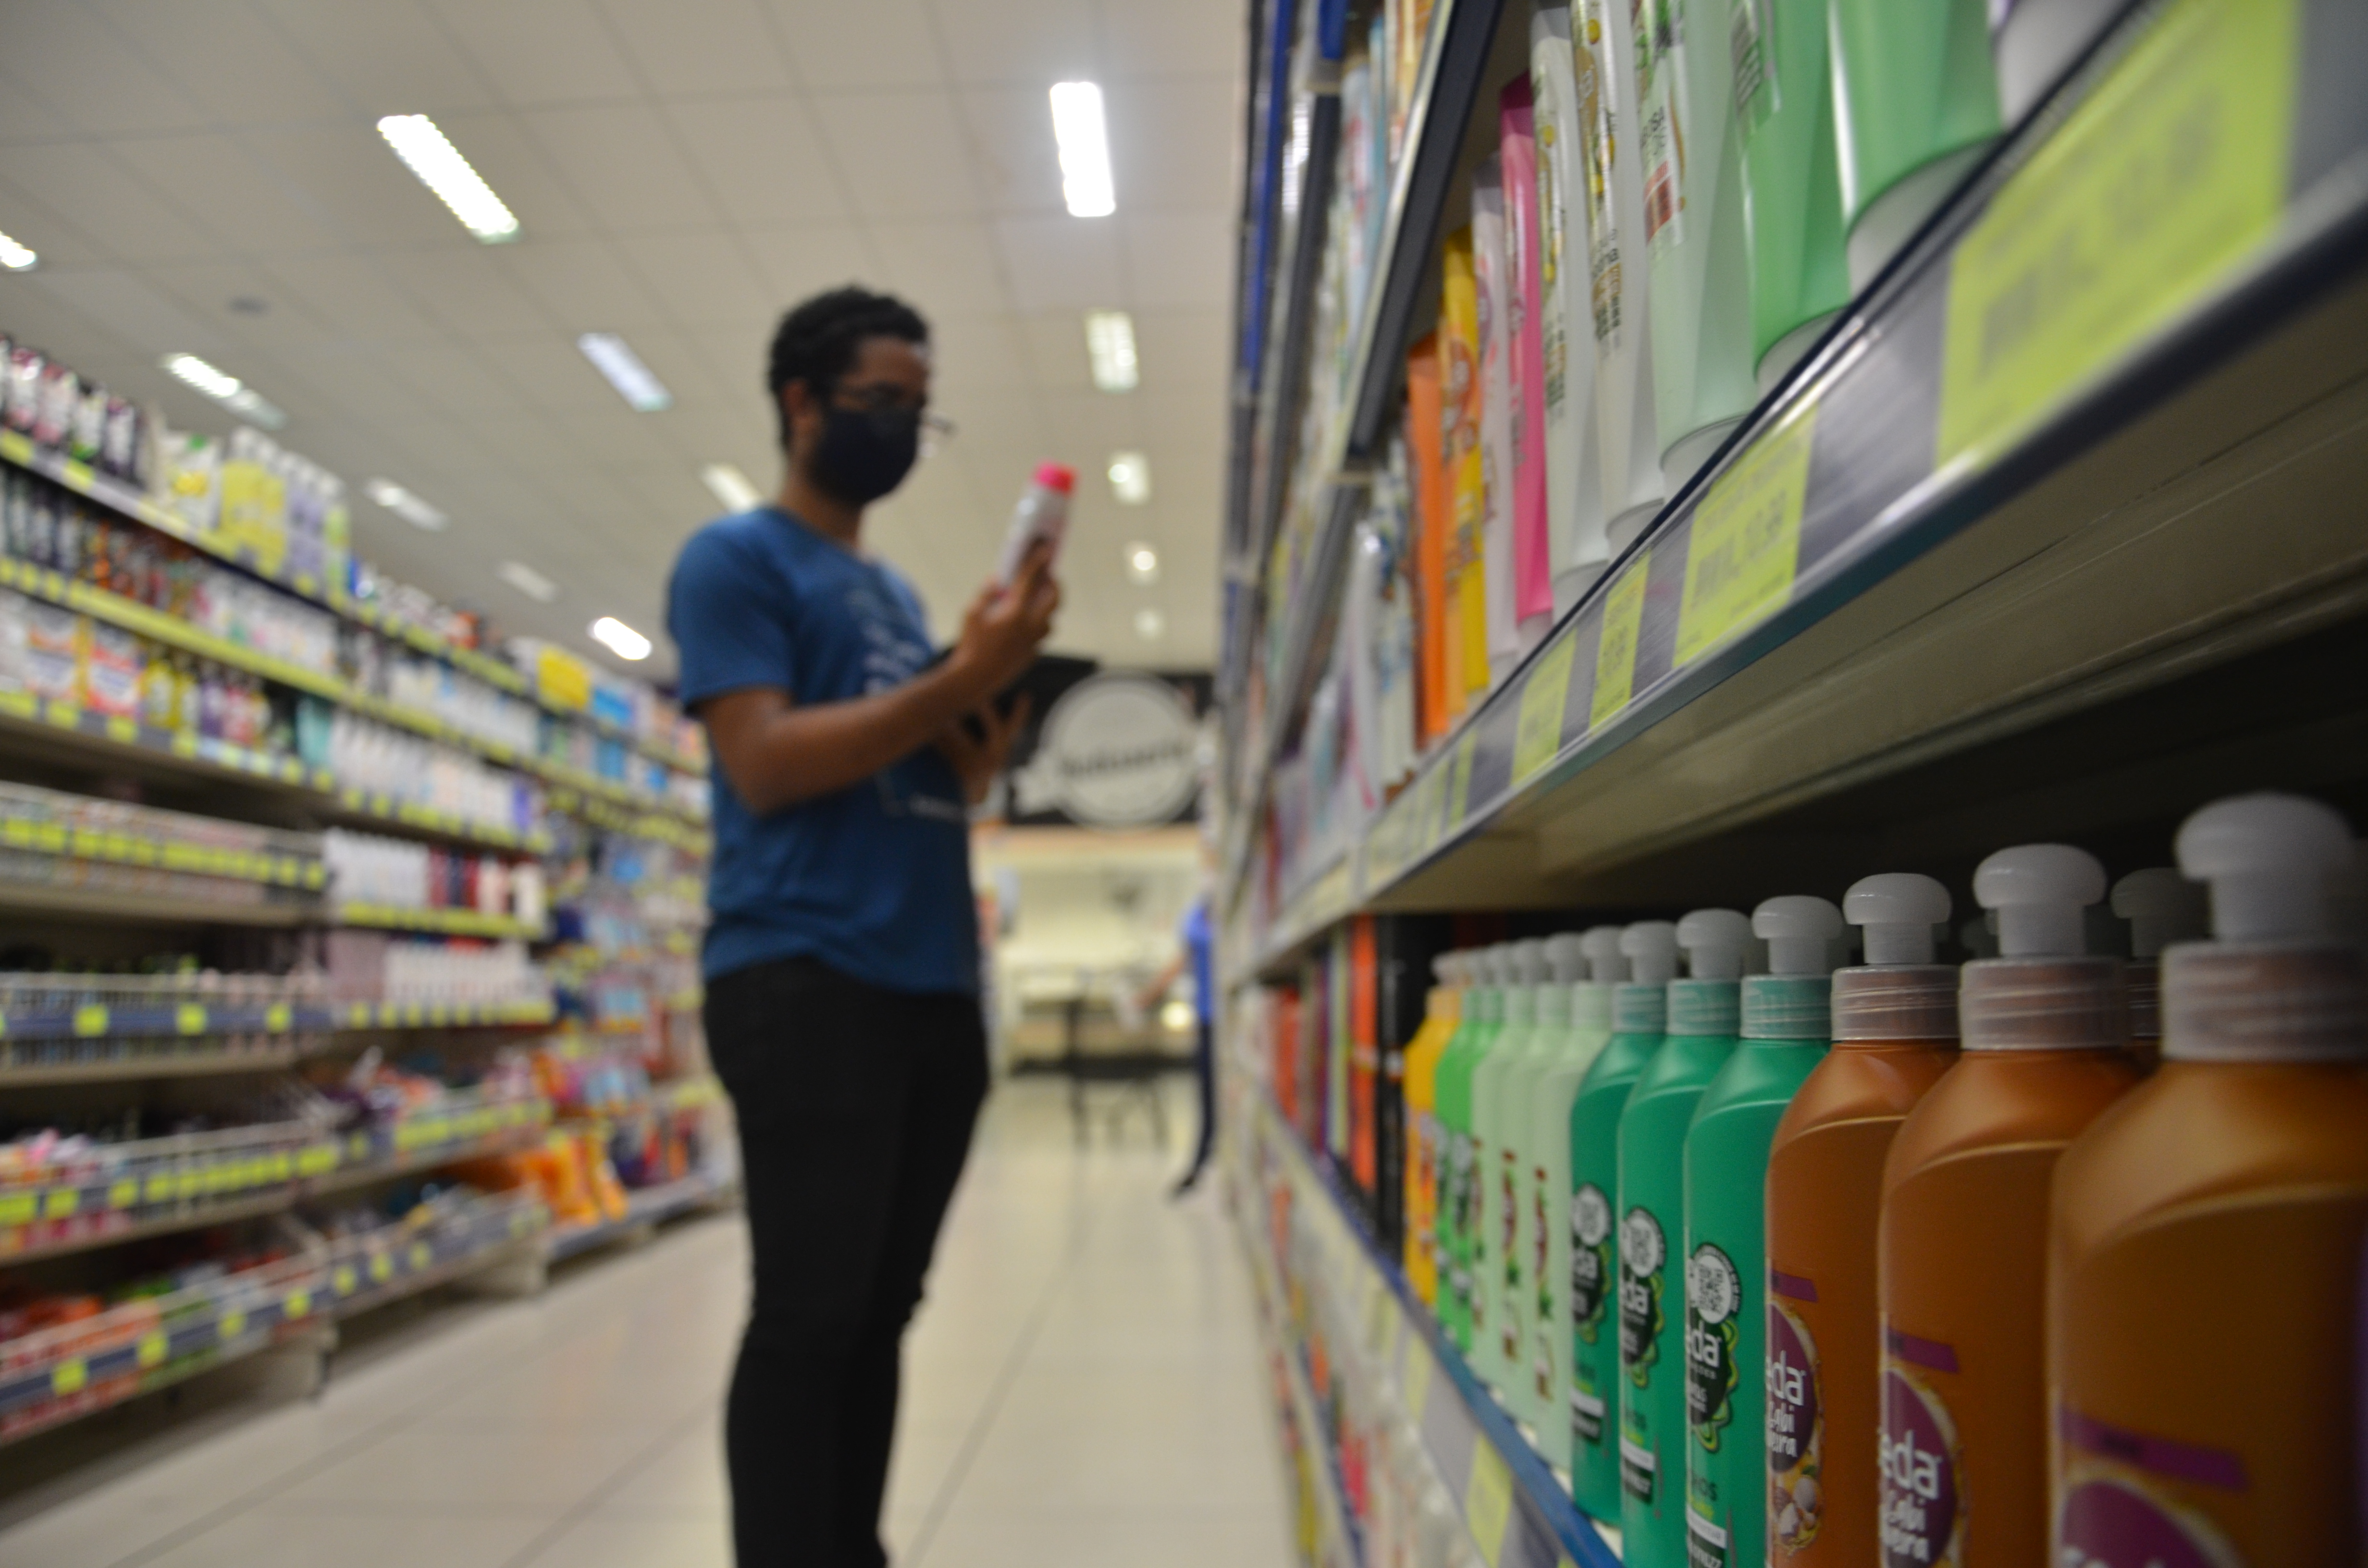 Grupo de higiene pessoal apresentou inflação de 2,82%, aponta IPT